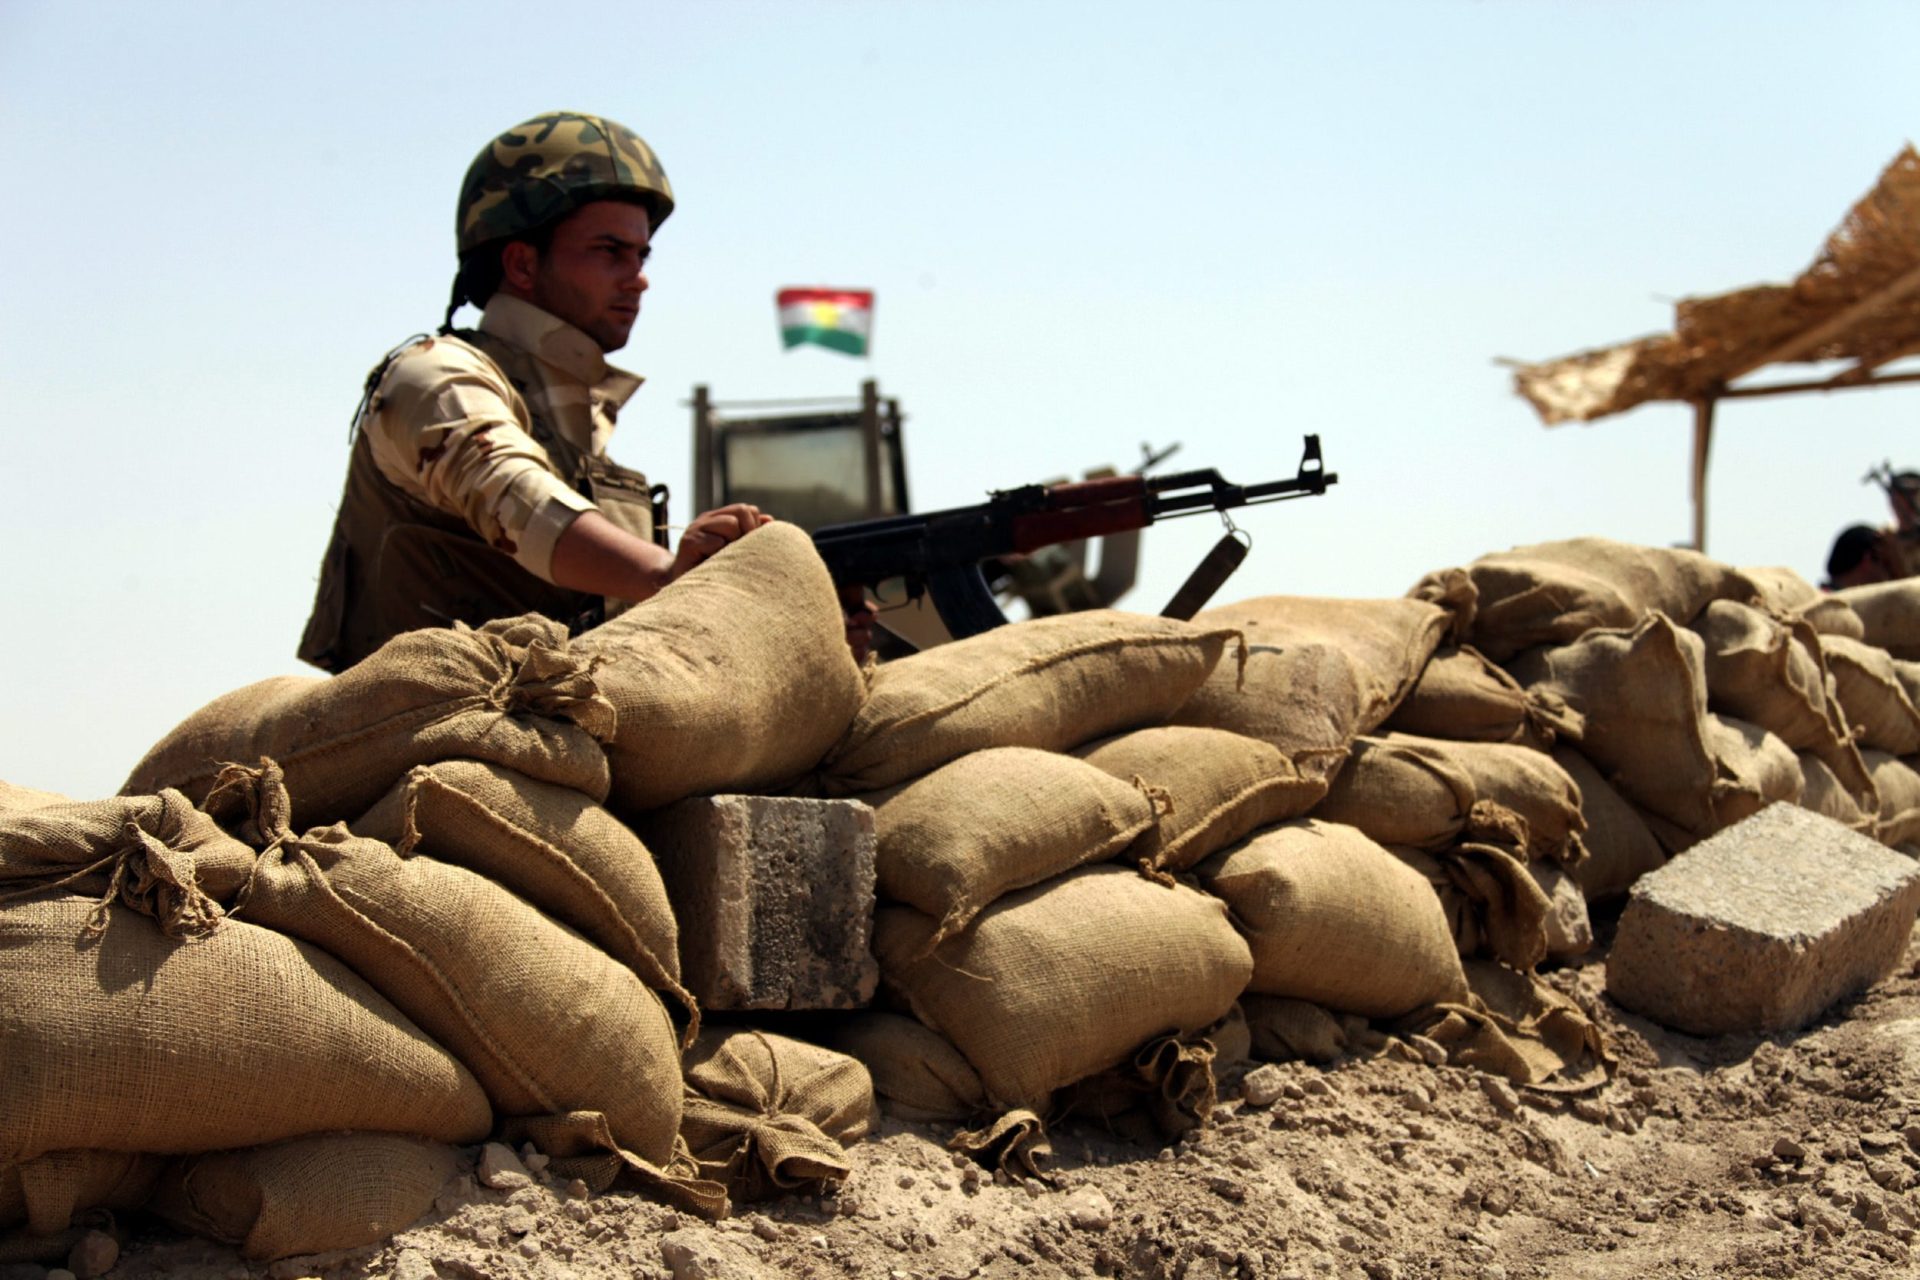 Estado Islâmico decapitou soldado curdo no Iraque